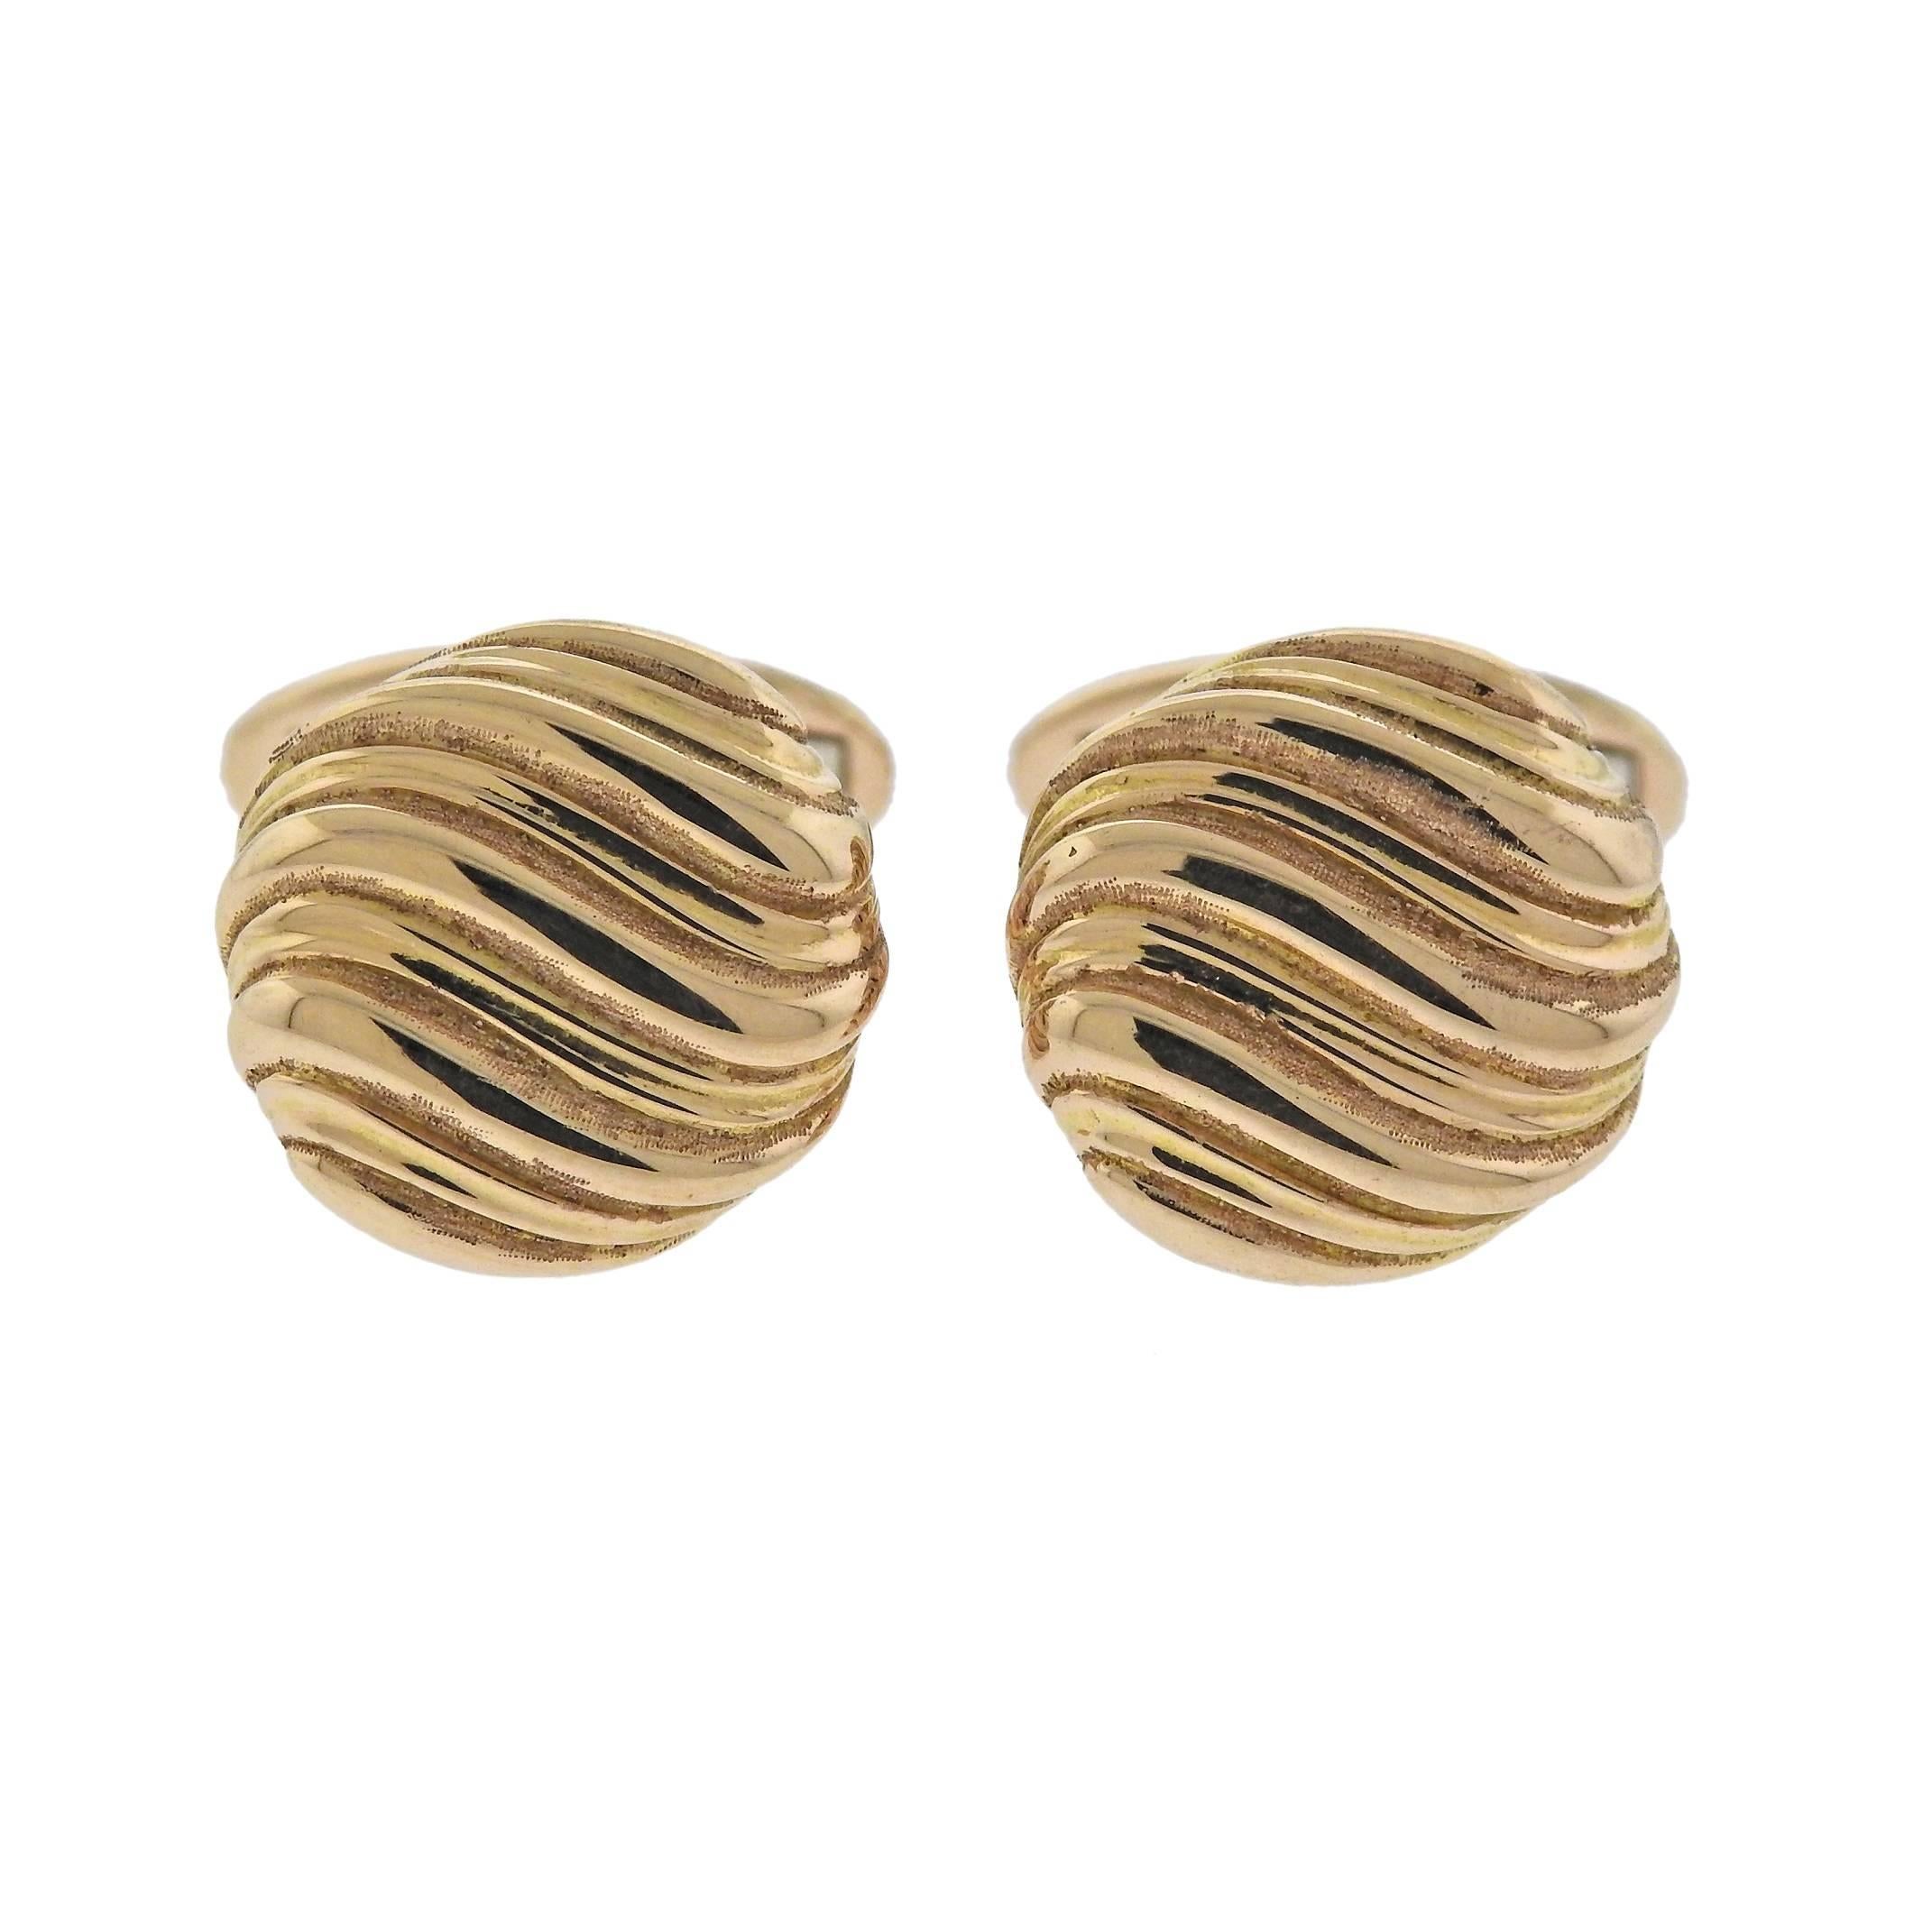 18k rose gold wave motif cufflinks, crafted by Buccellati. Retail $5500. Cufflink top - 15mm in diameter , weigh 12 grams. Marked: 750, Maker's hallmark.